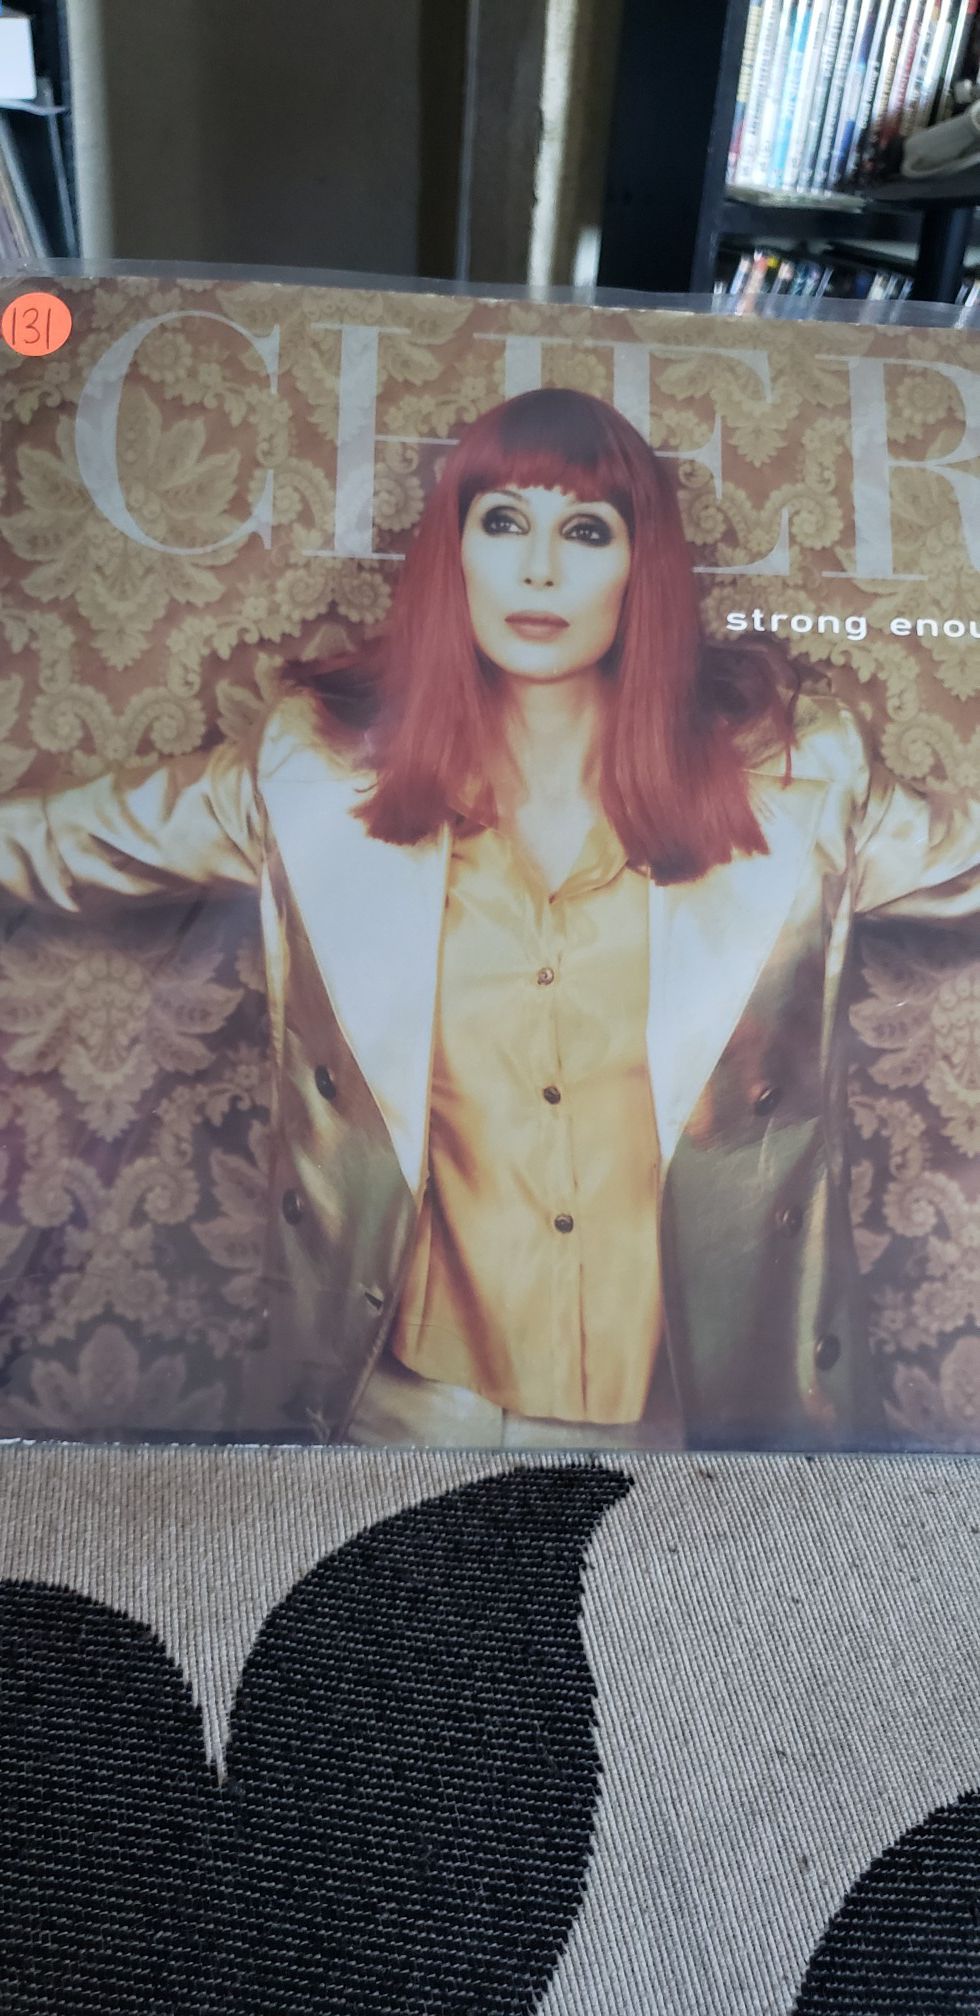 Cher strong enough 12" vinyl record